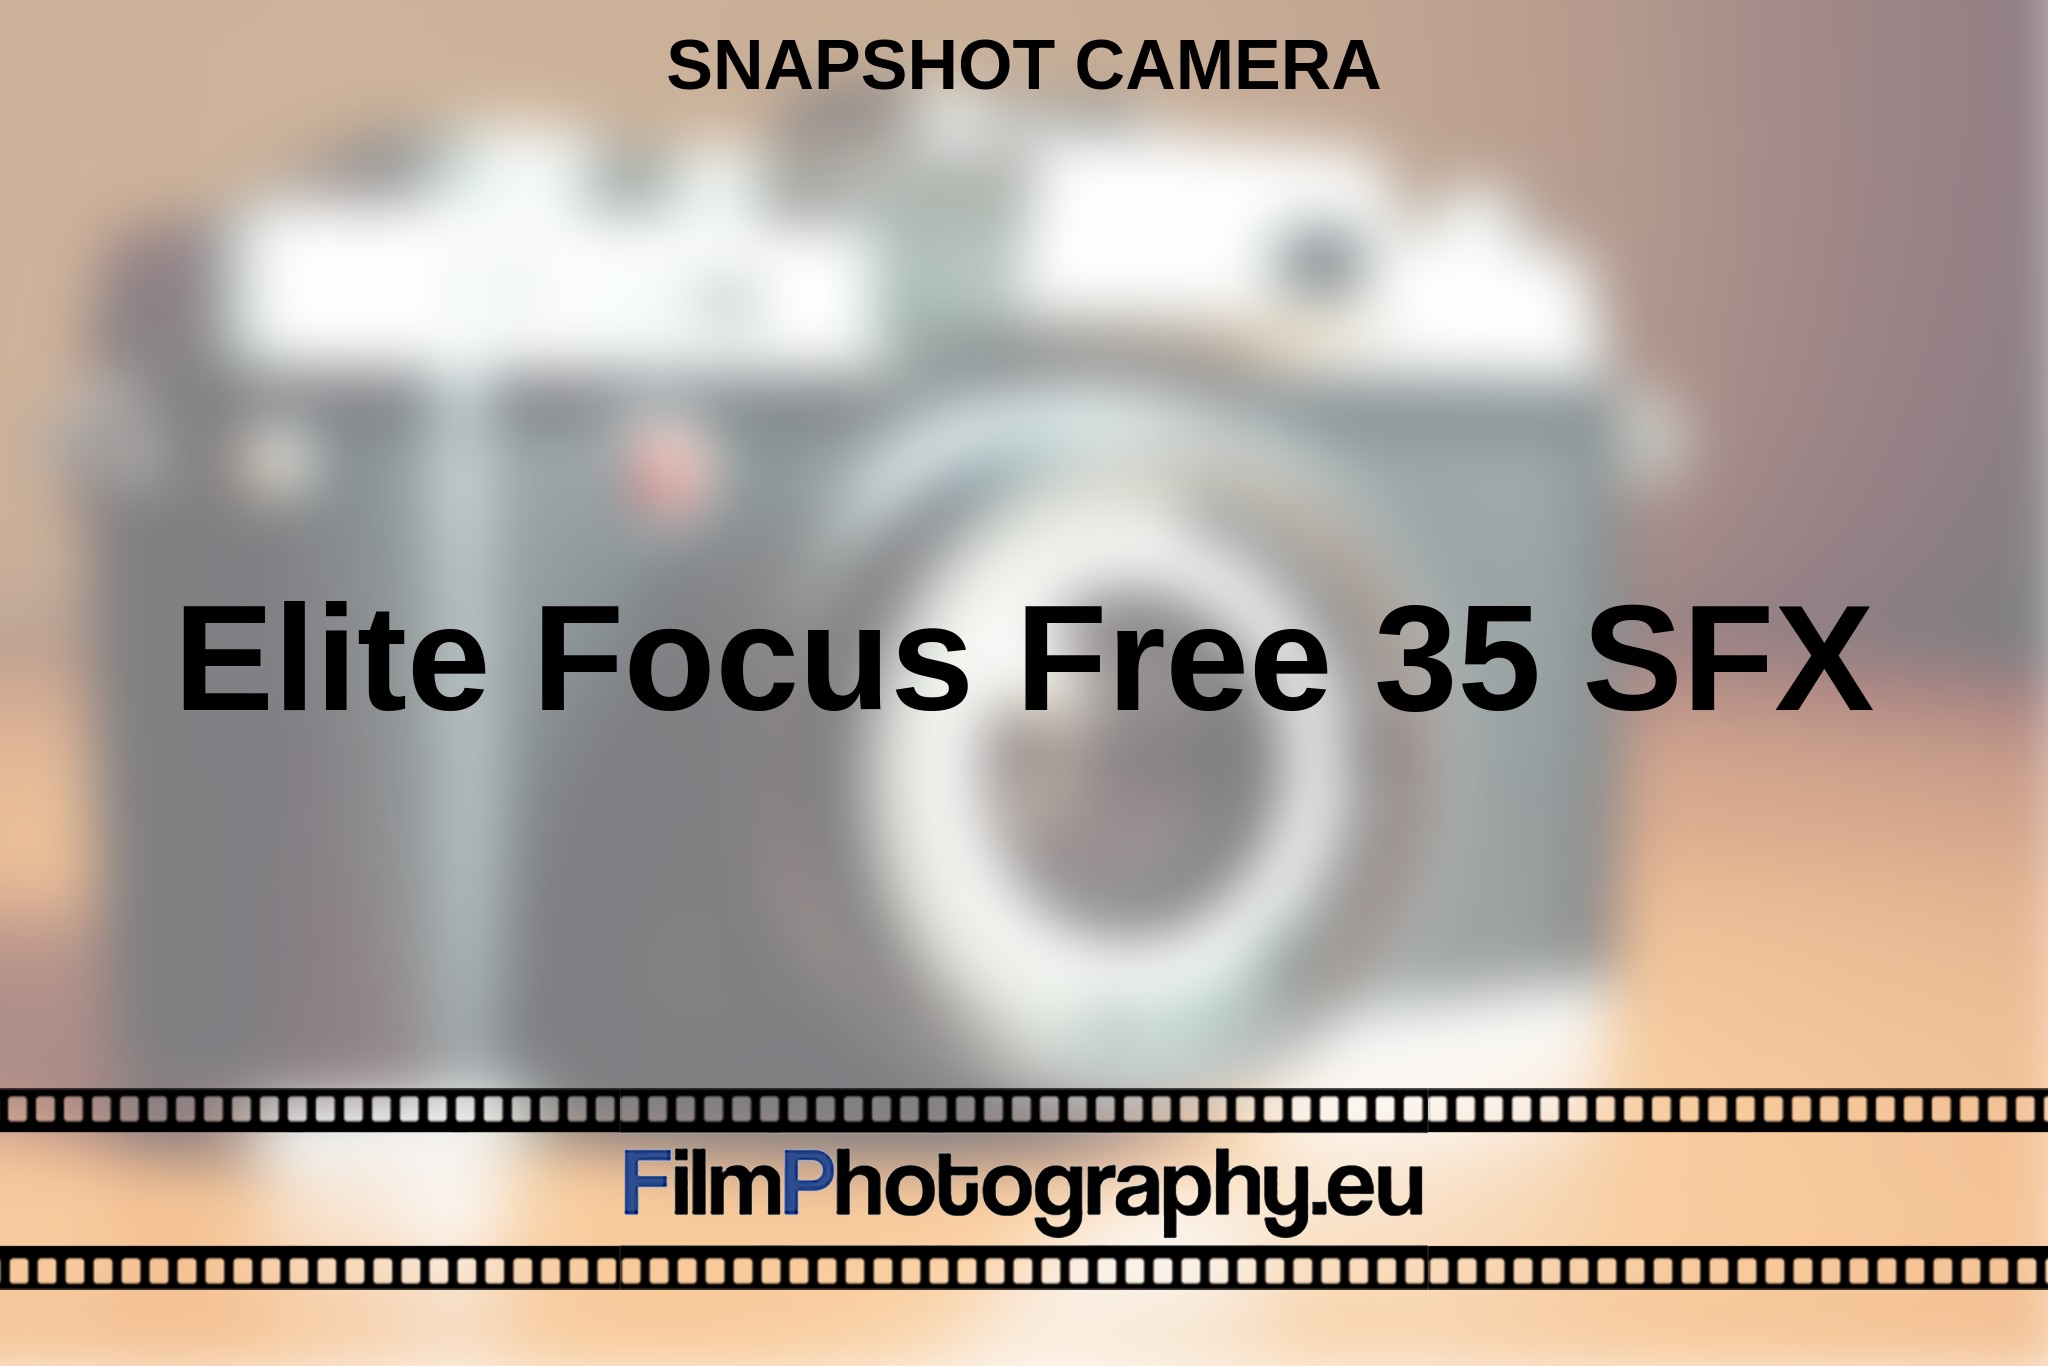 elite-focus-free-35-sfx-snapshot-camera-en-bnv.jpg